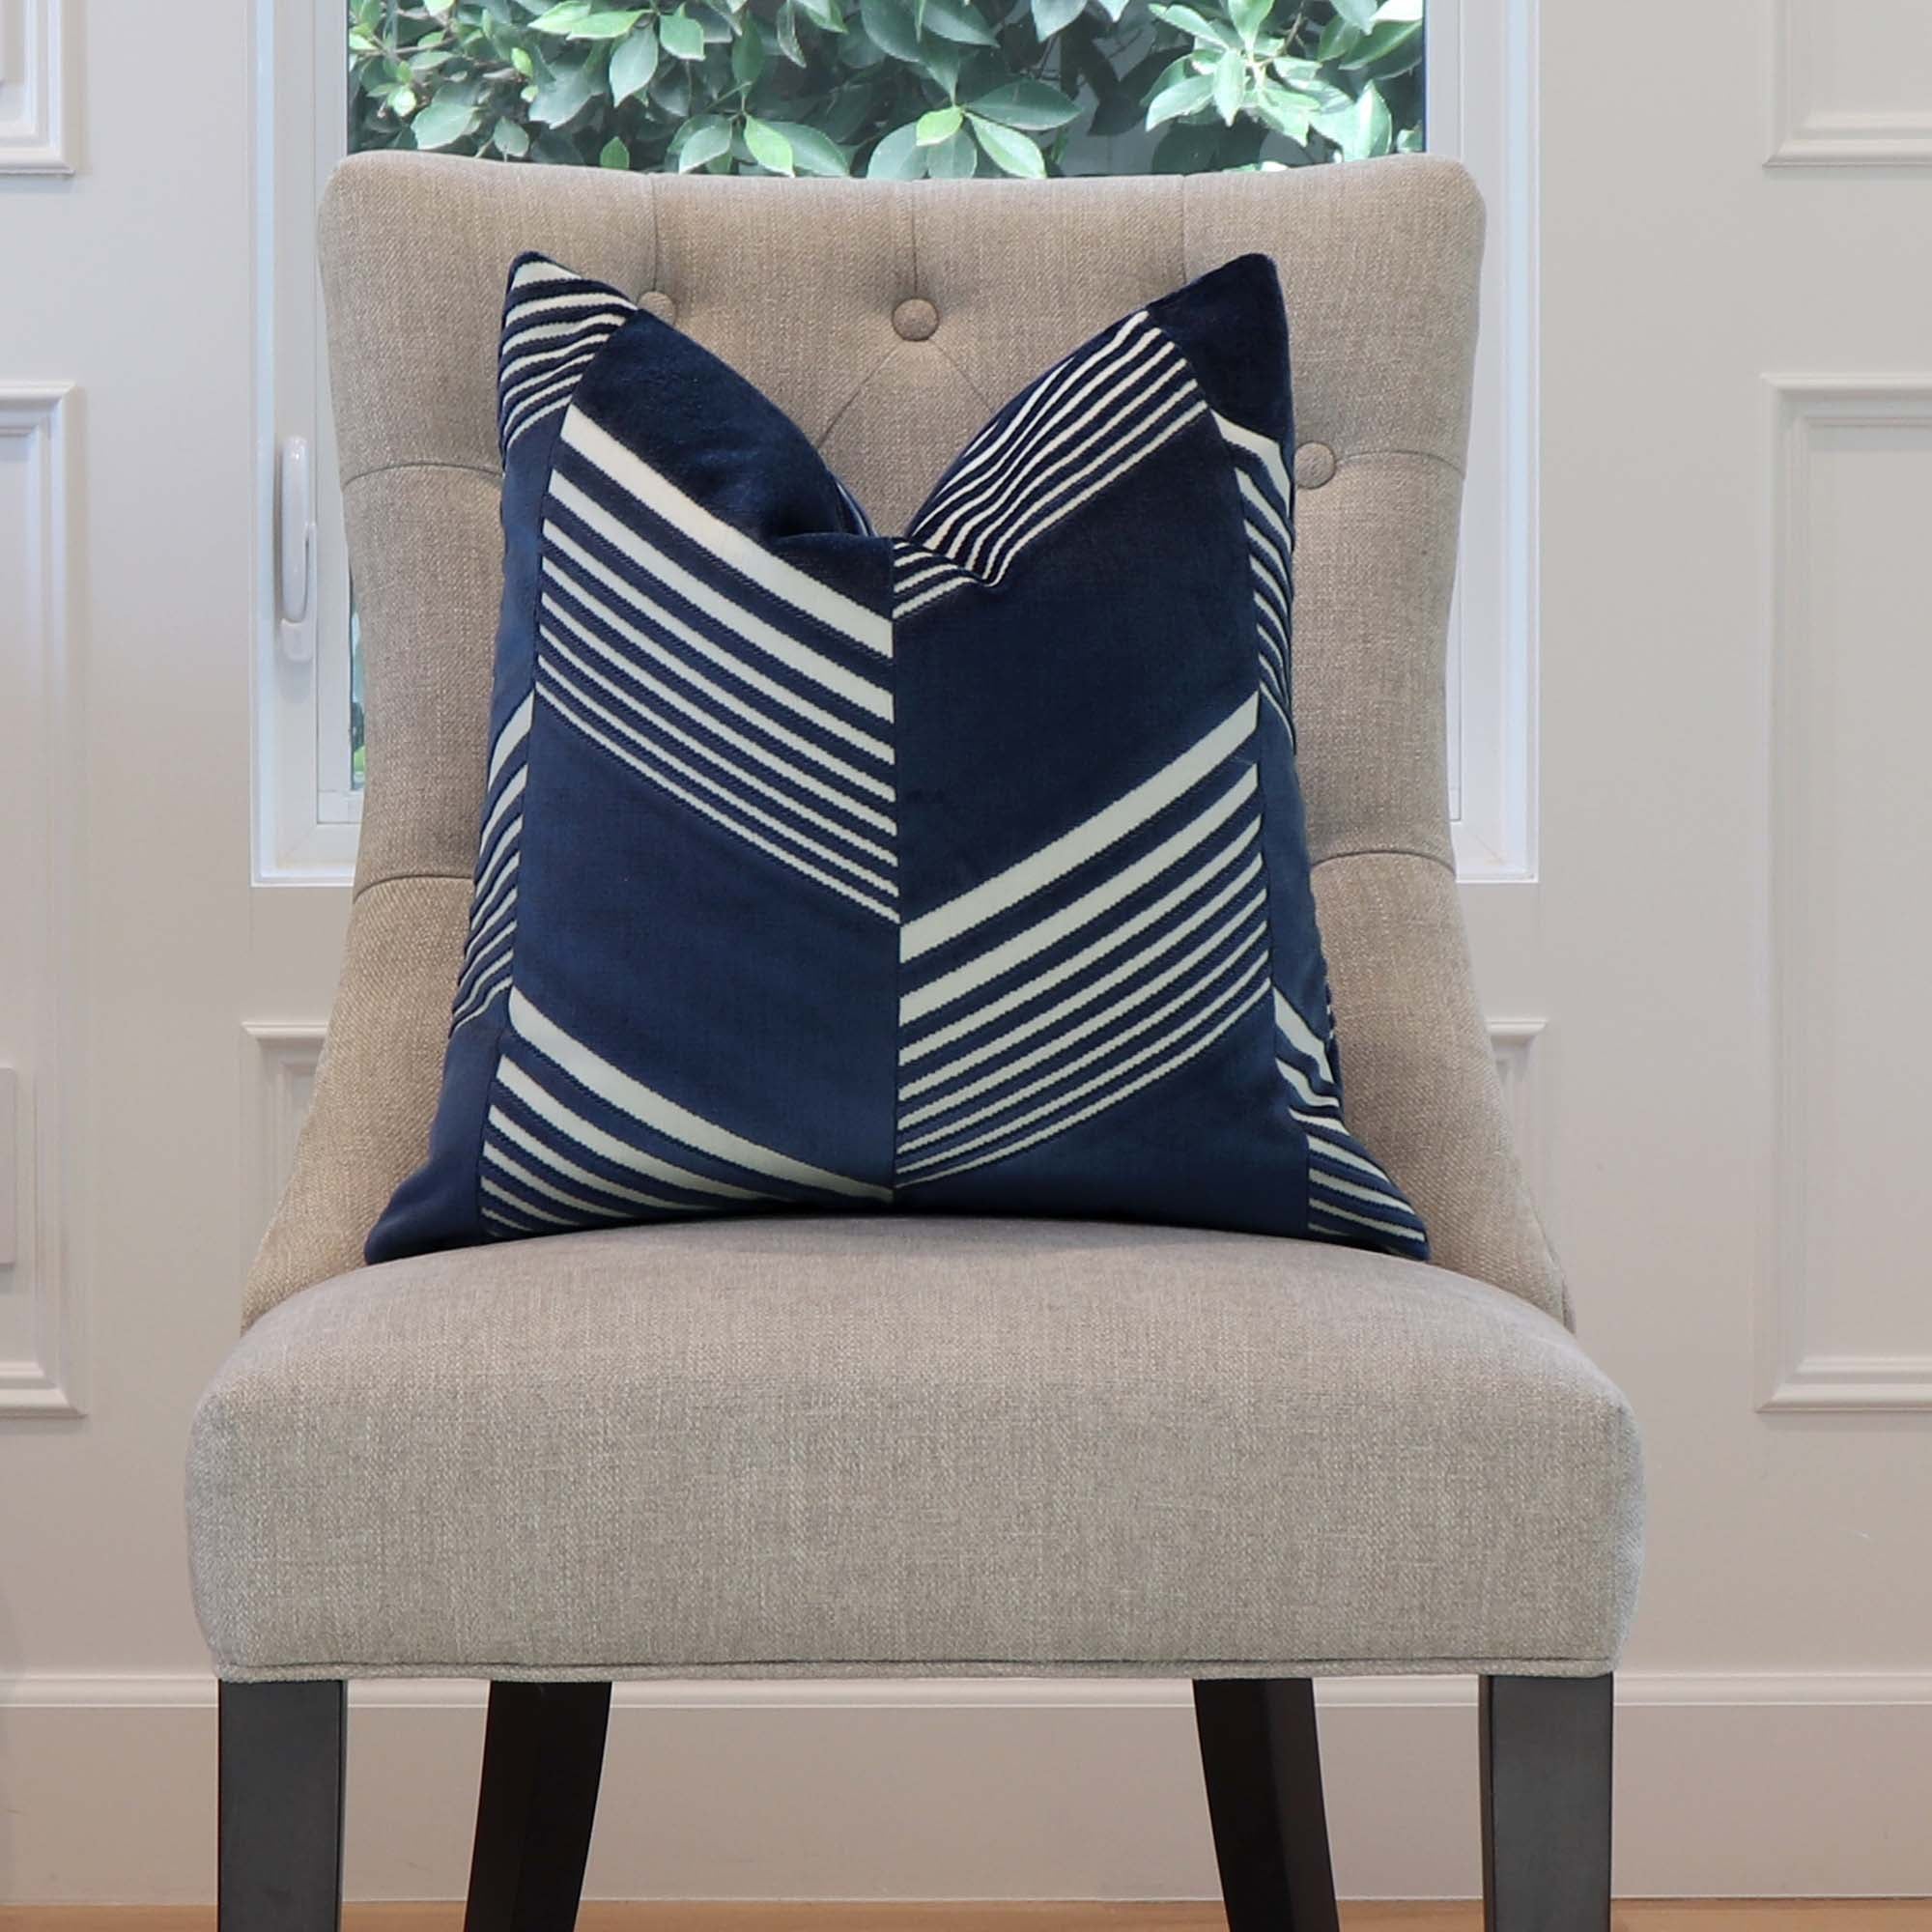 Schumacher Jessie Cut Velvet Navy Blue Designer Decorative Throw Pillow Cover